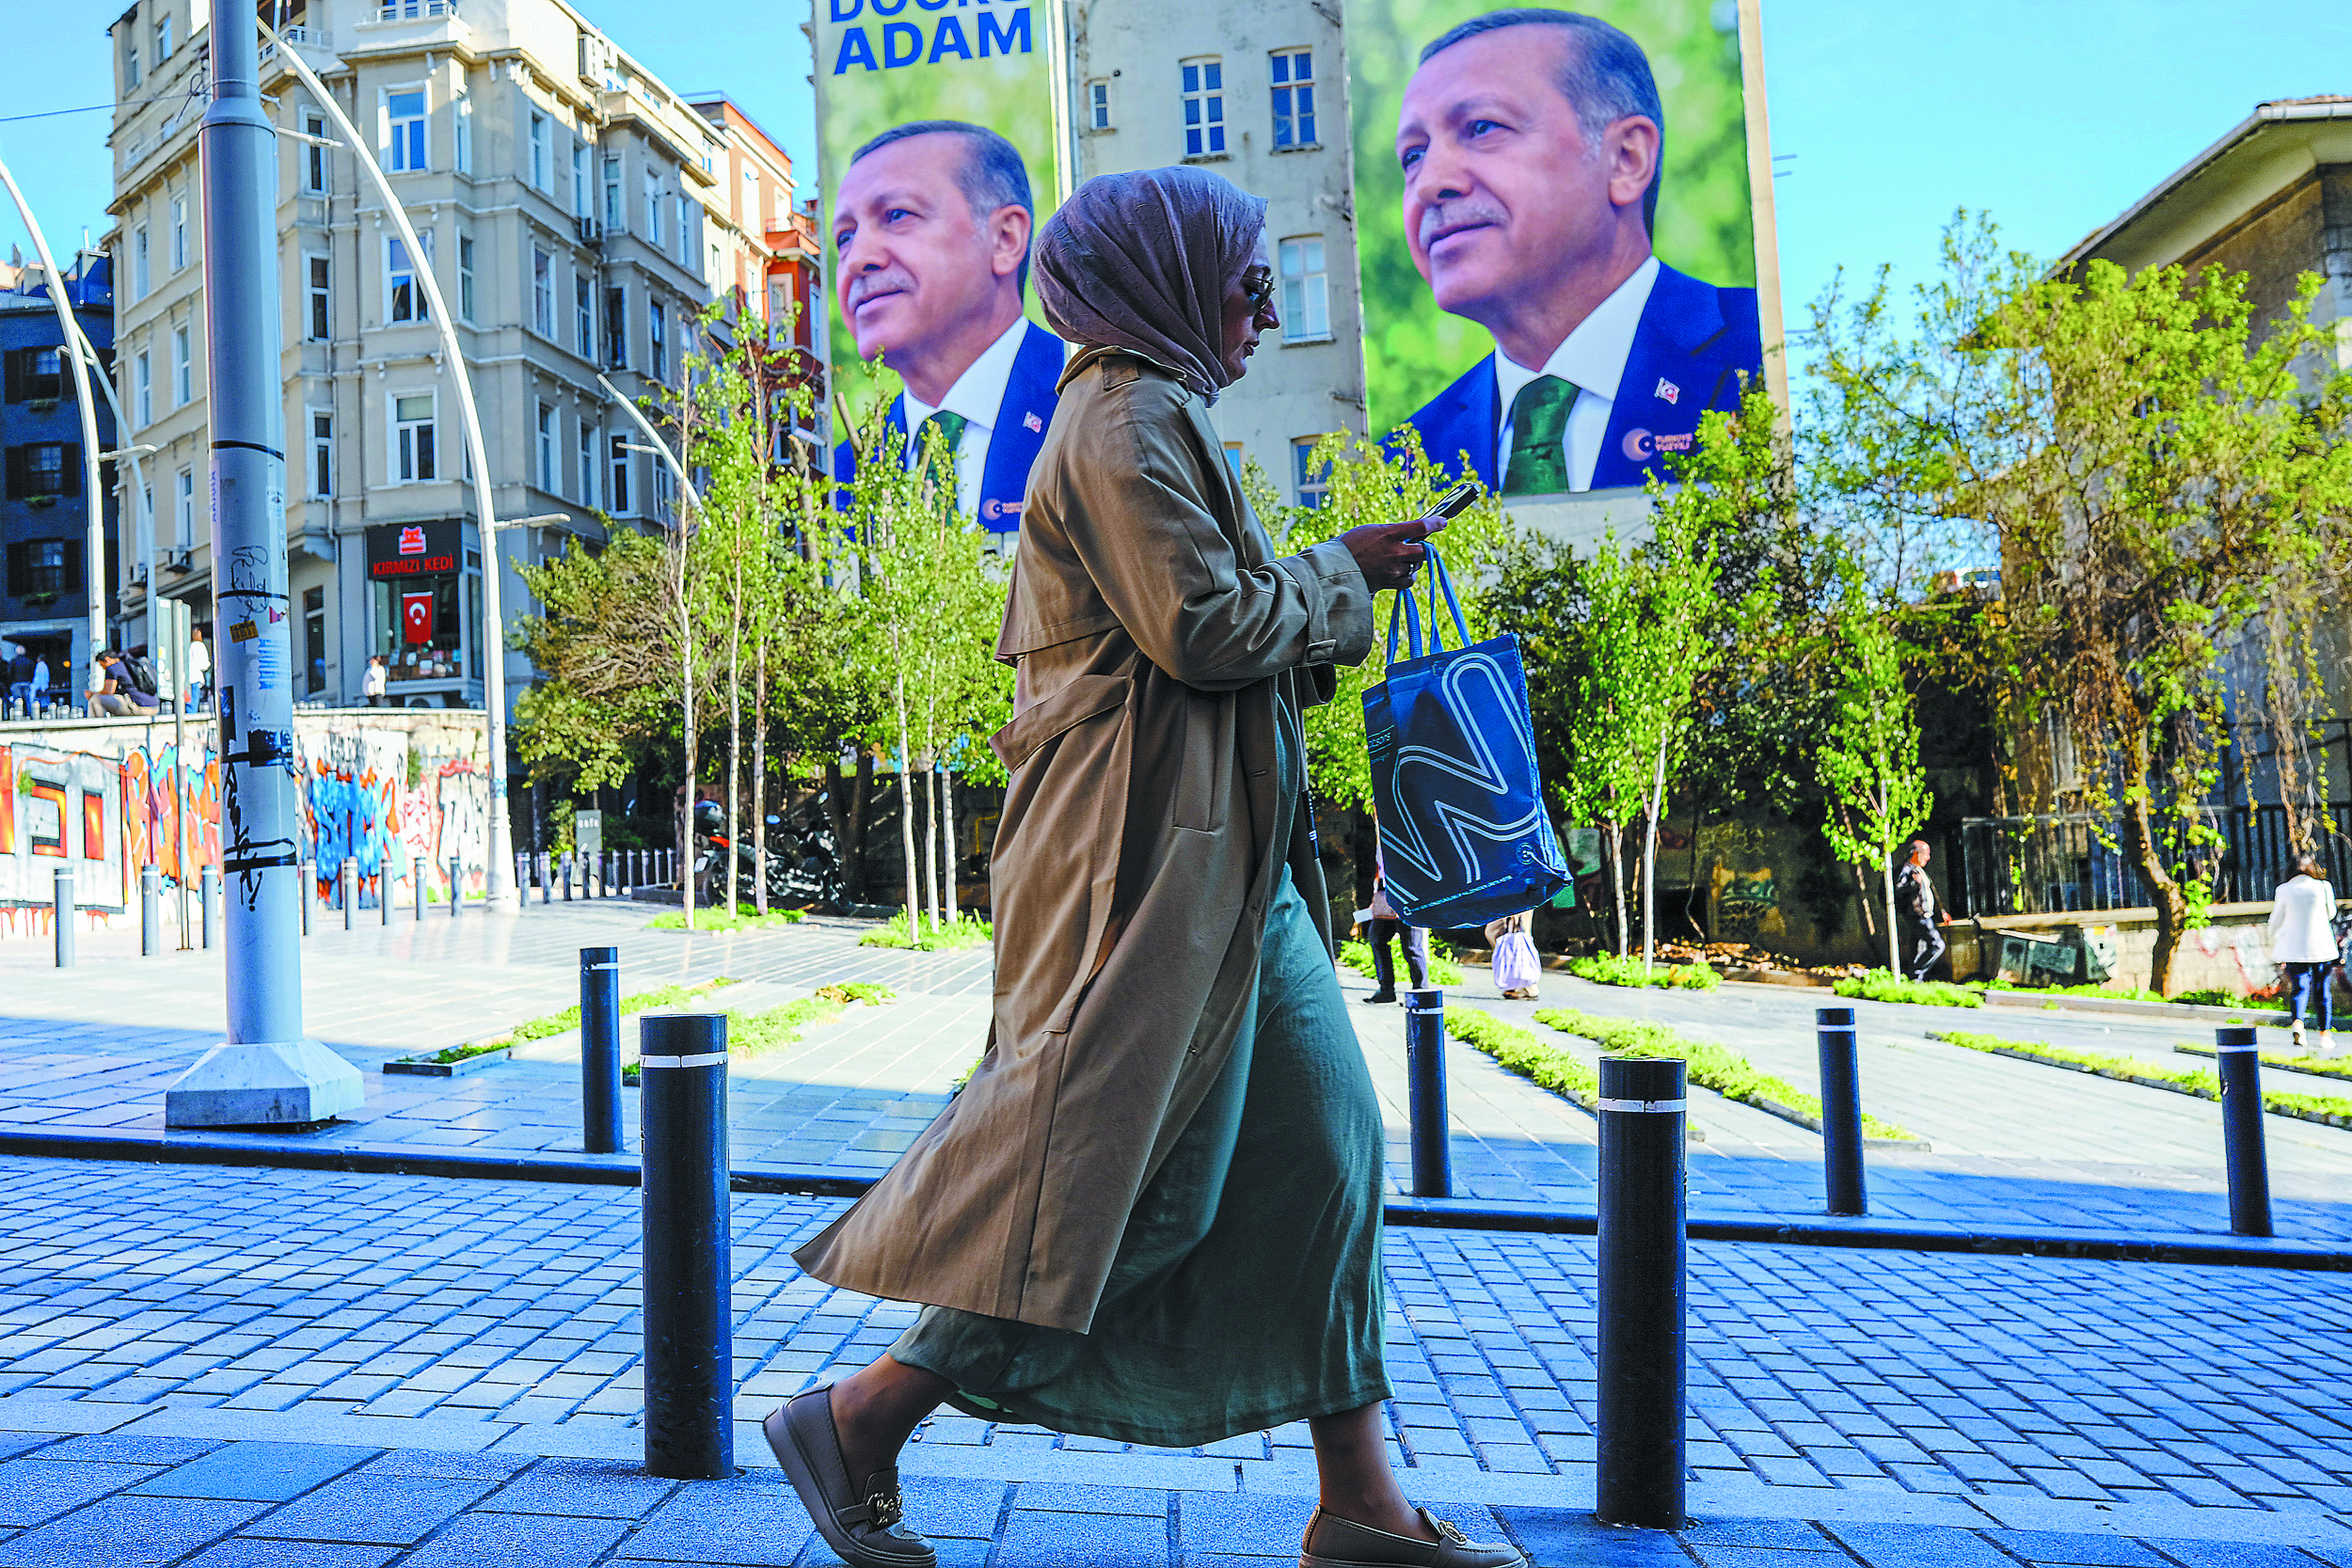 Αλλαγή πολιτικής στην Τουρκία: Η Κεντρική Τράπεζα αύξησε στο 15% το βασικό επιτόκιο